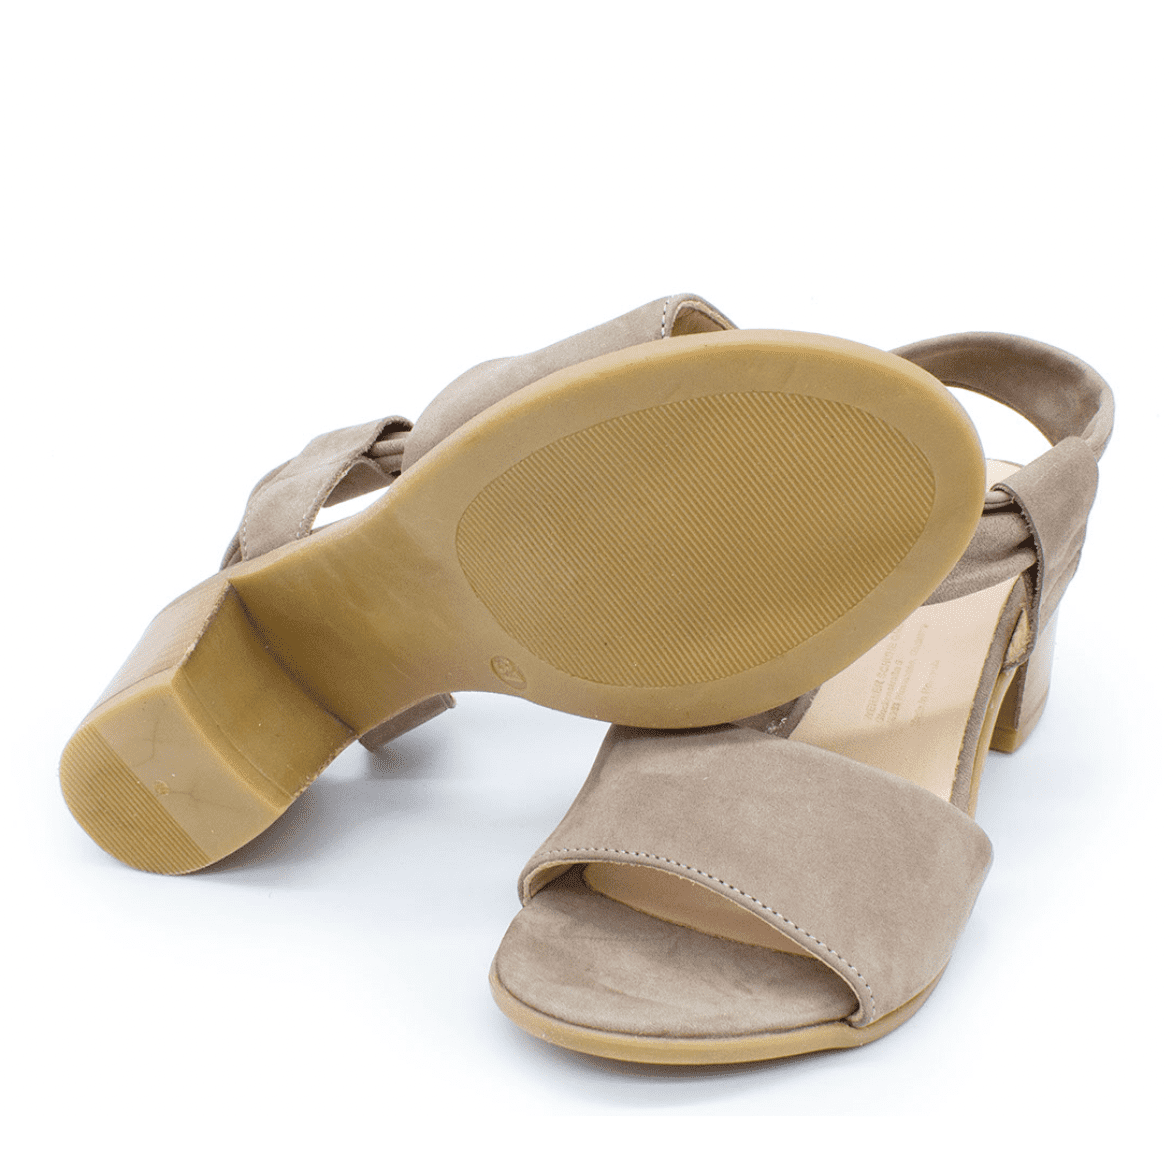 Riemen-Sandalette mit Absatz